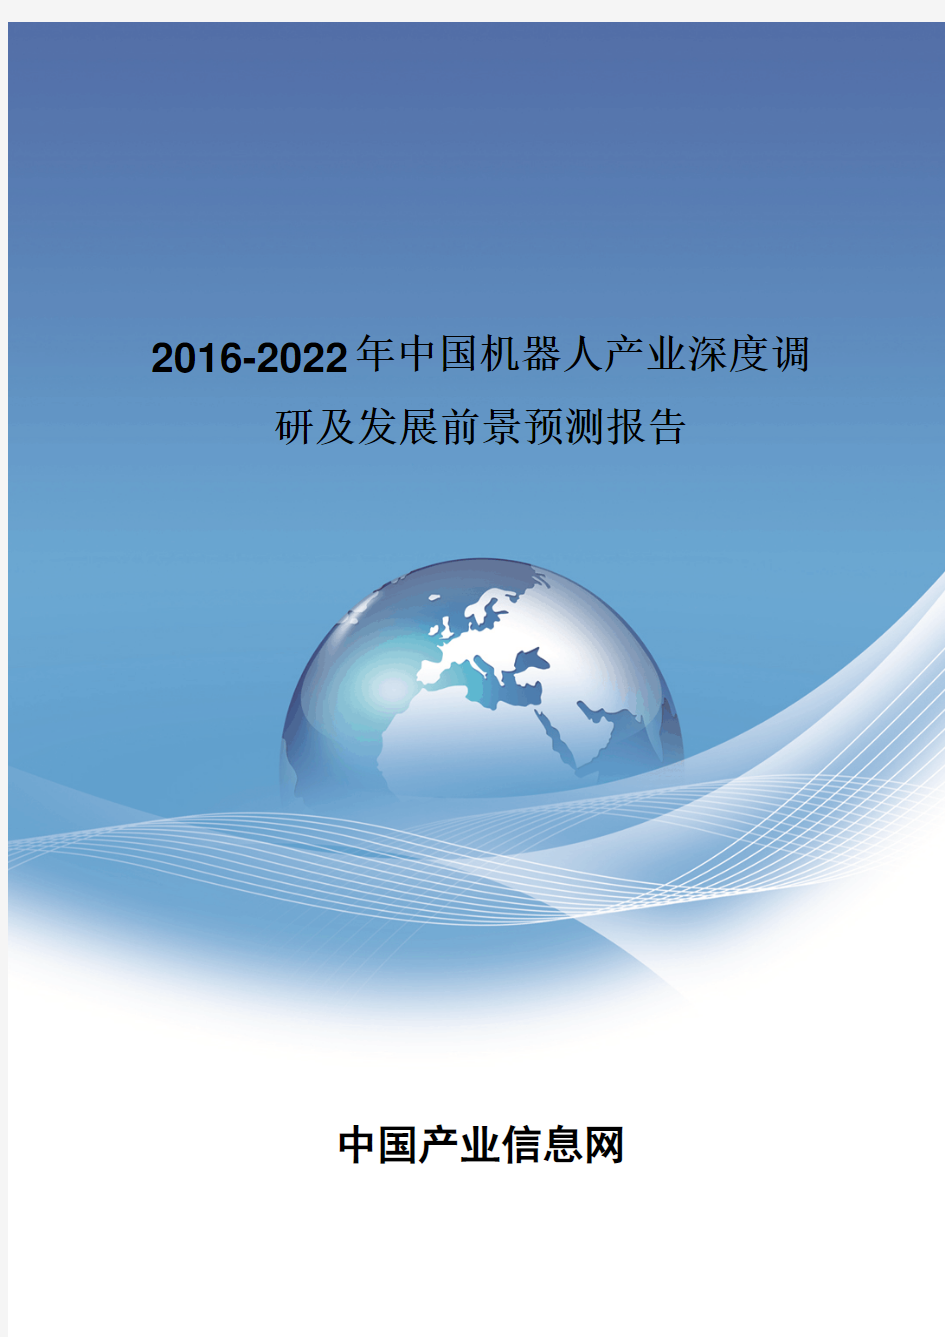 2016-2022年中国机器人产业深度调研报告